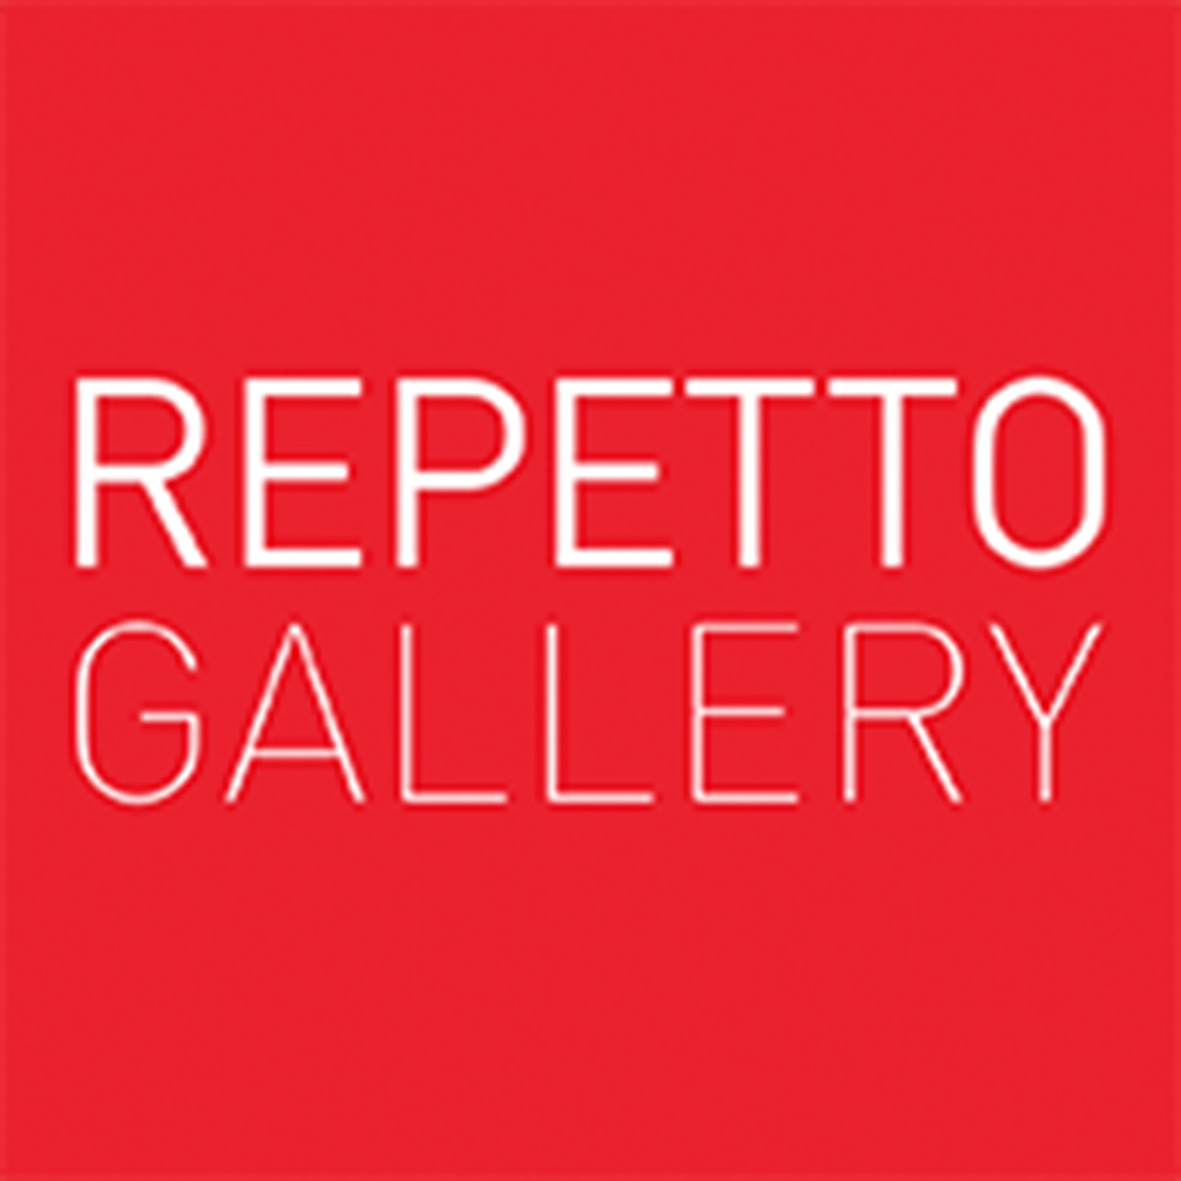 © Repetto Gallery